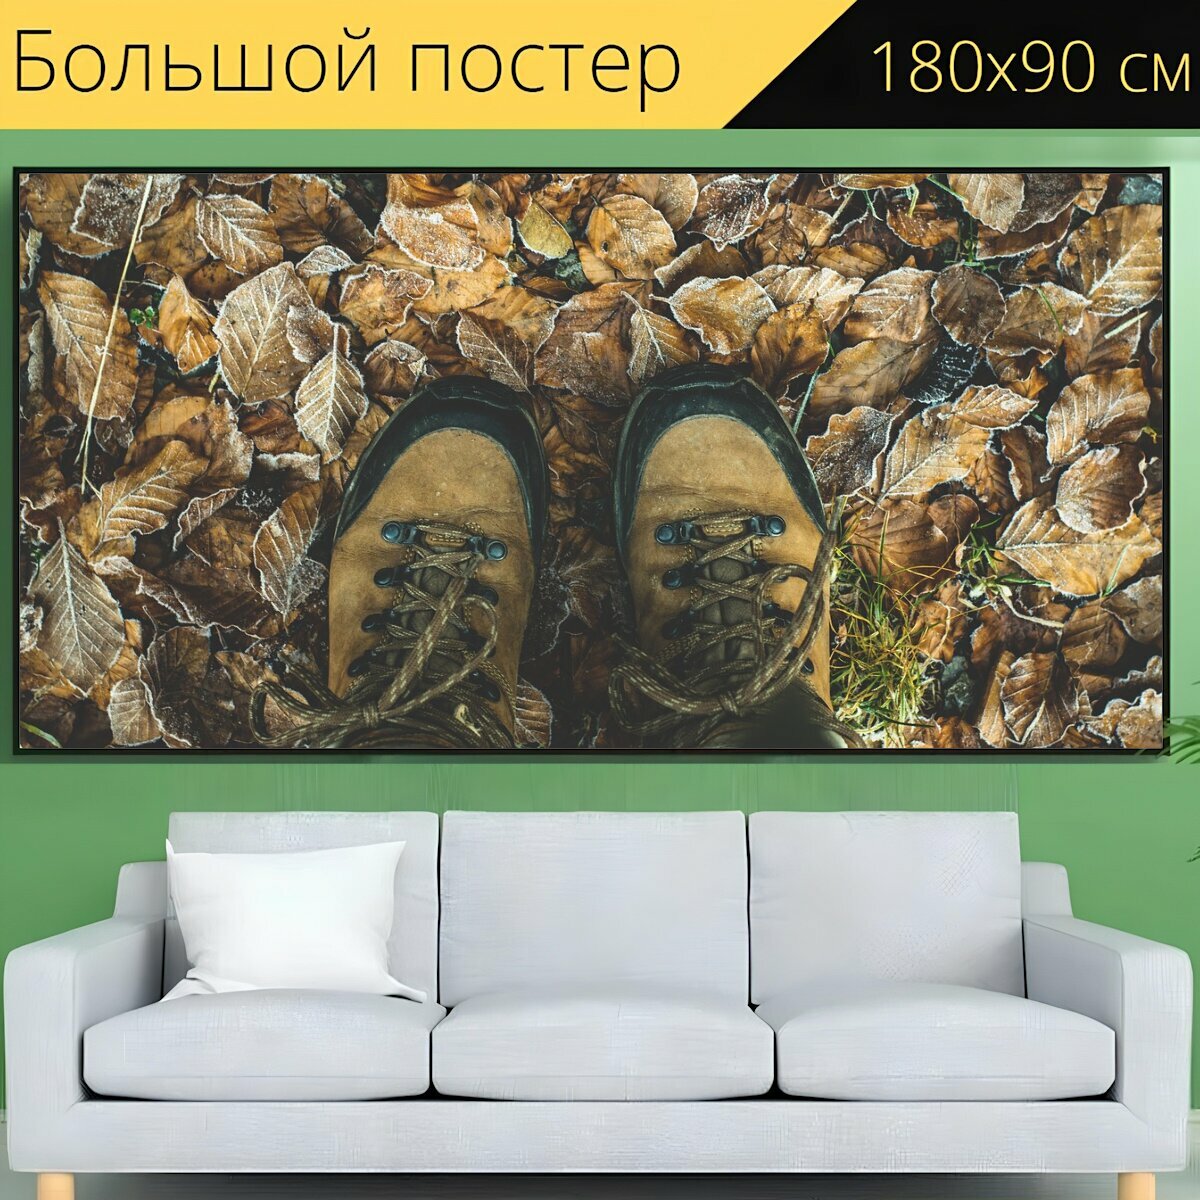 Большой постер "Обувь, ботинки для прогулки, поход" 180 x 90 см. для интерьера